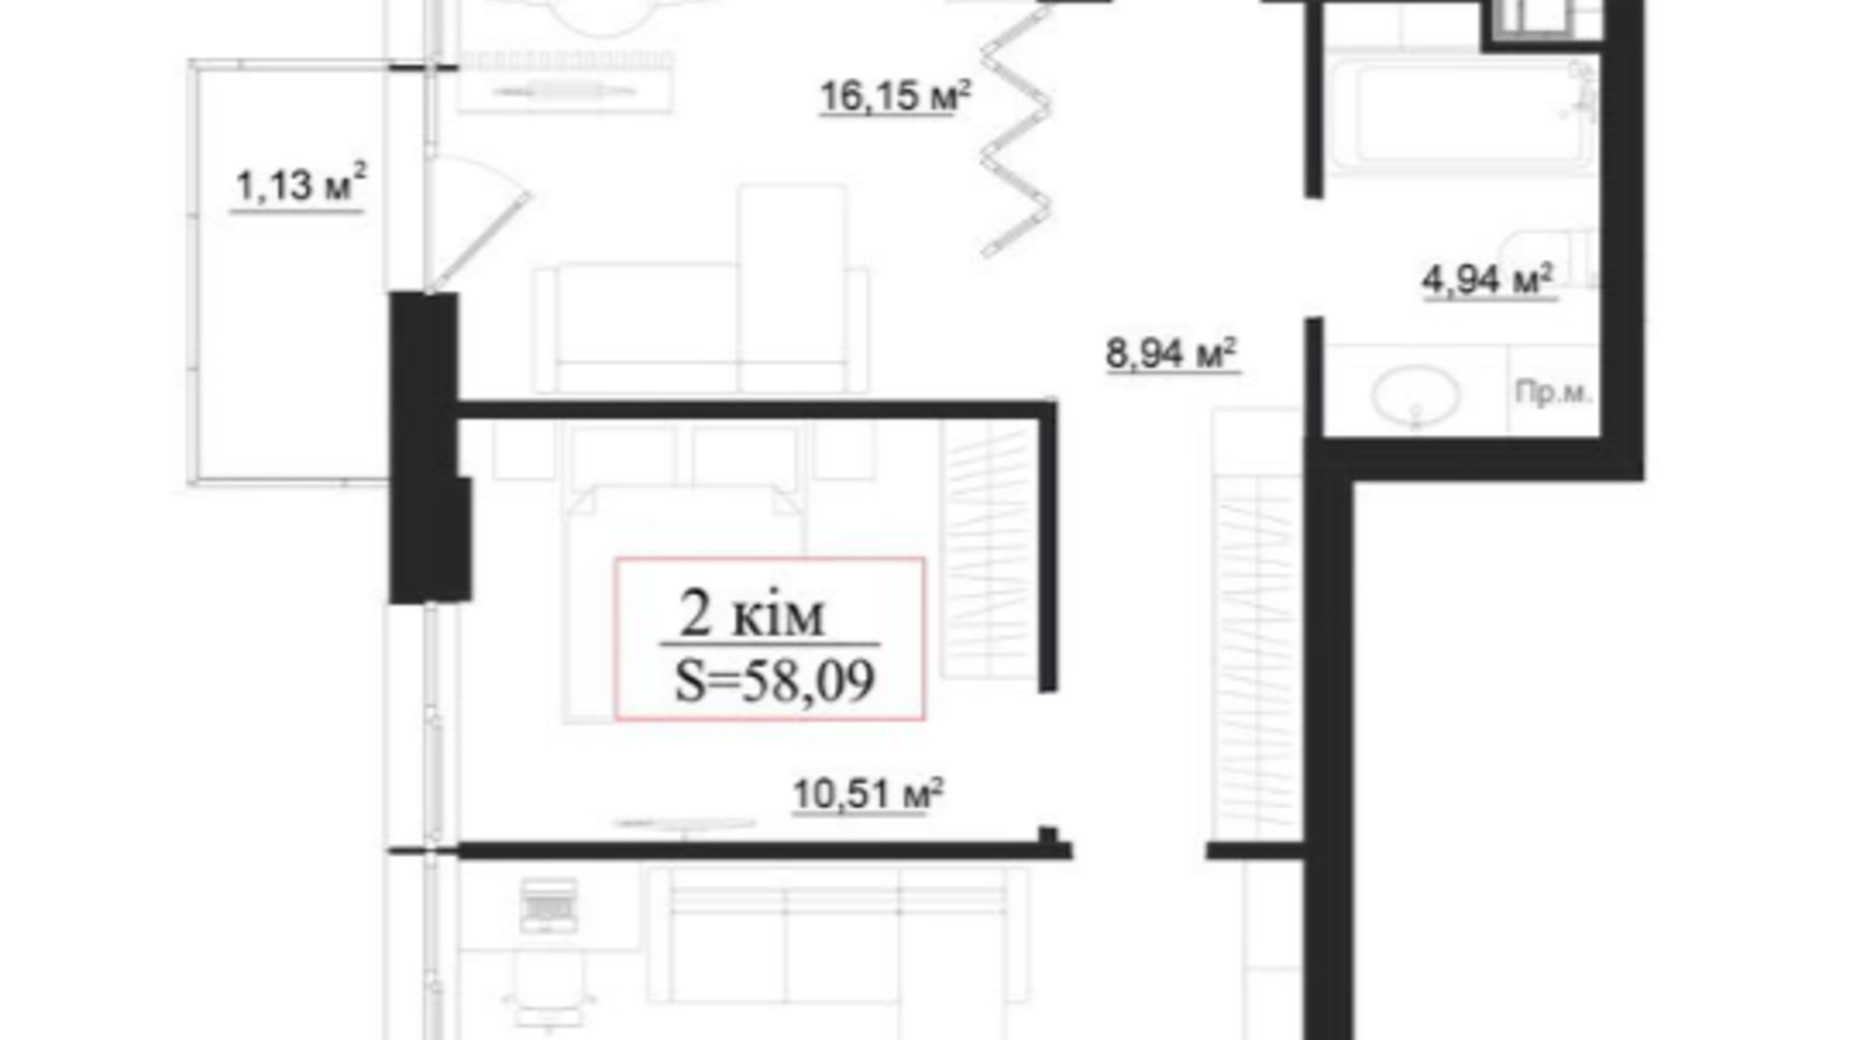 Планування 2-кімнатної квартири в Клубний будинок на Панаса Мирного 58.09 м², фото 659912